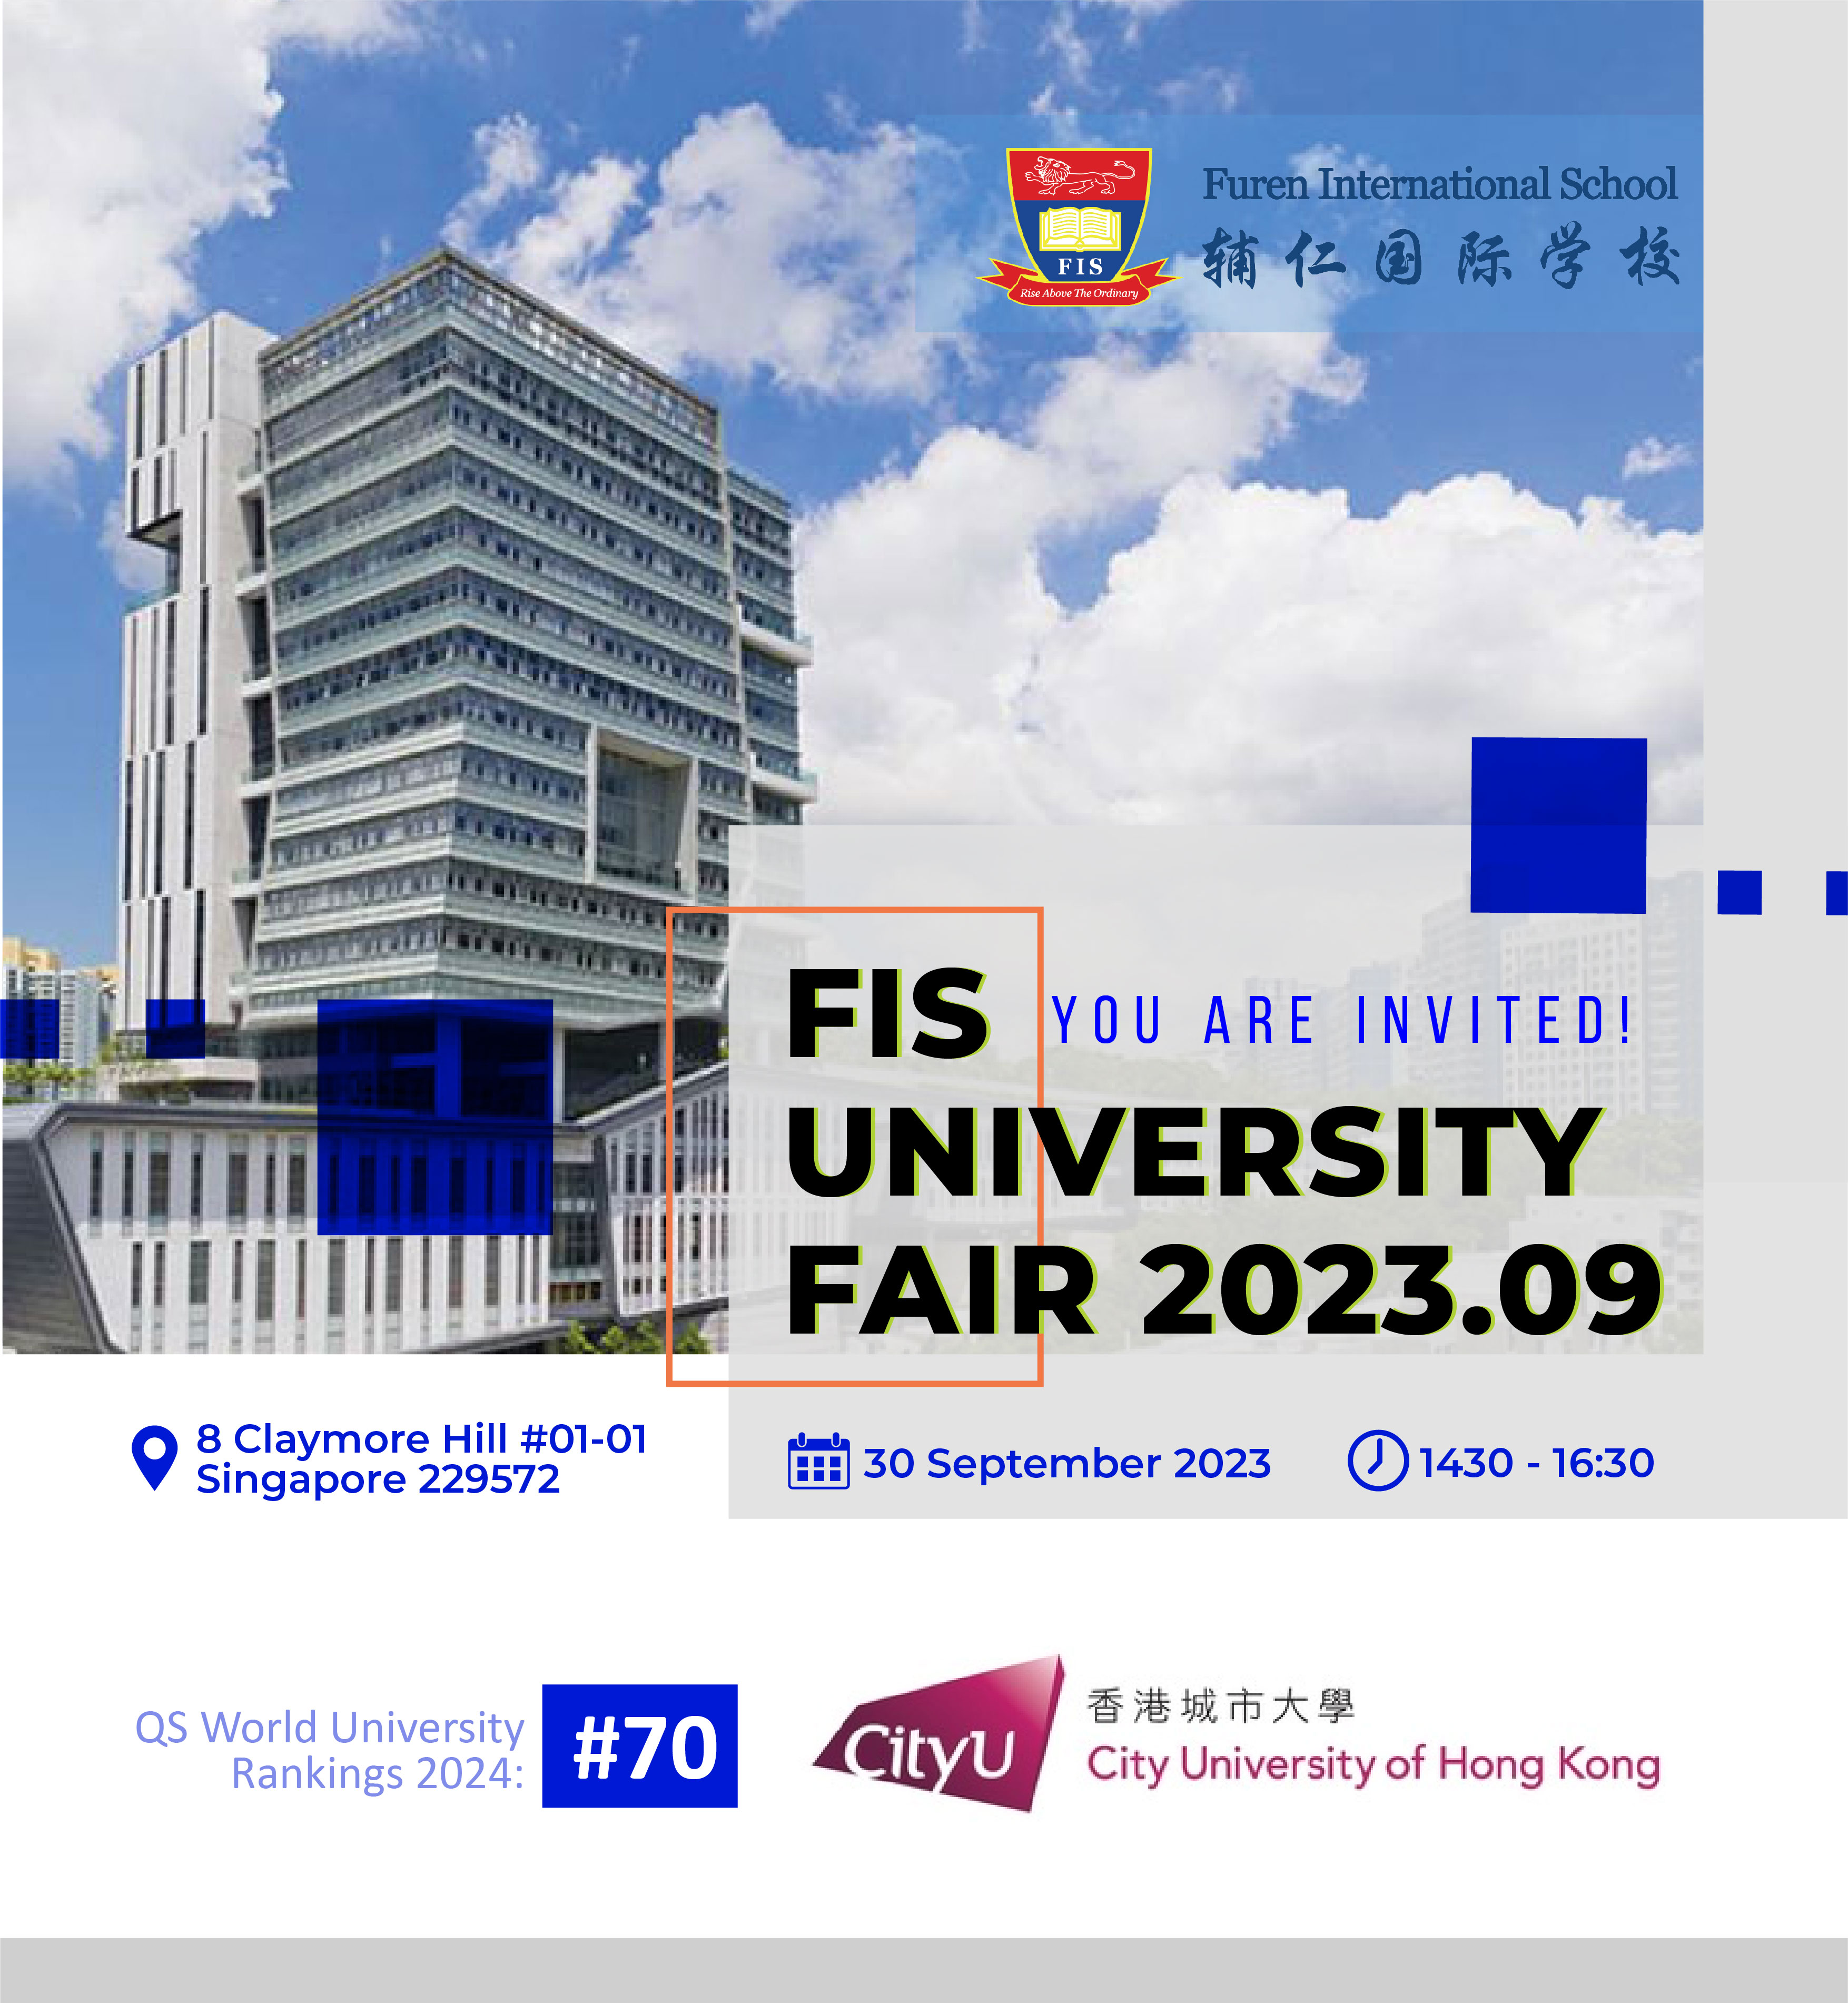 FIS University Fair – City University of Hong Kong (CityU)